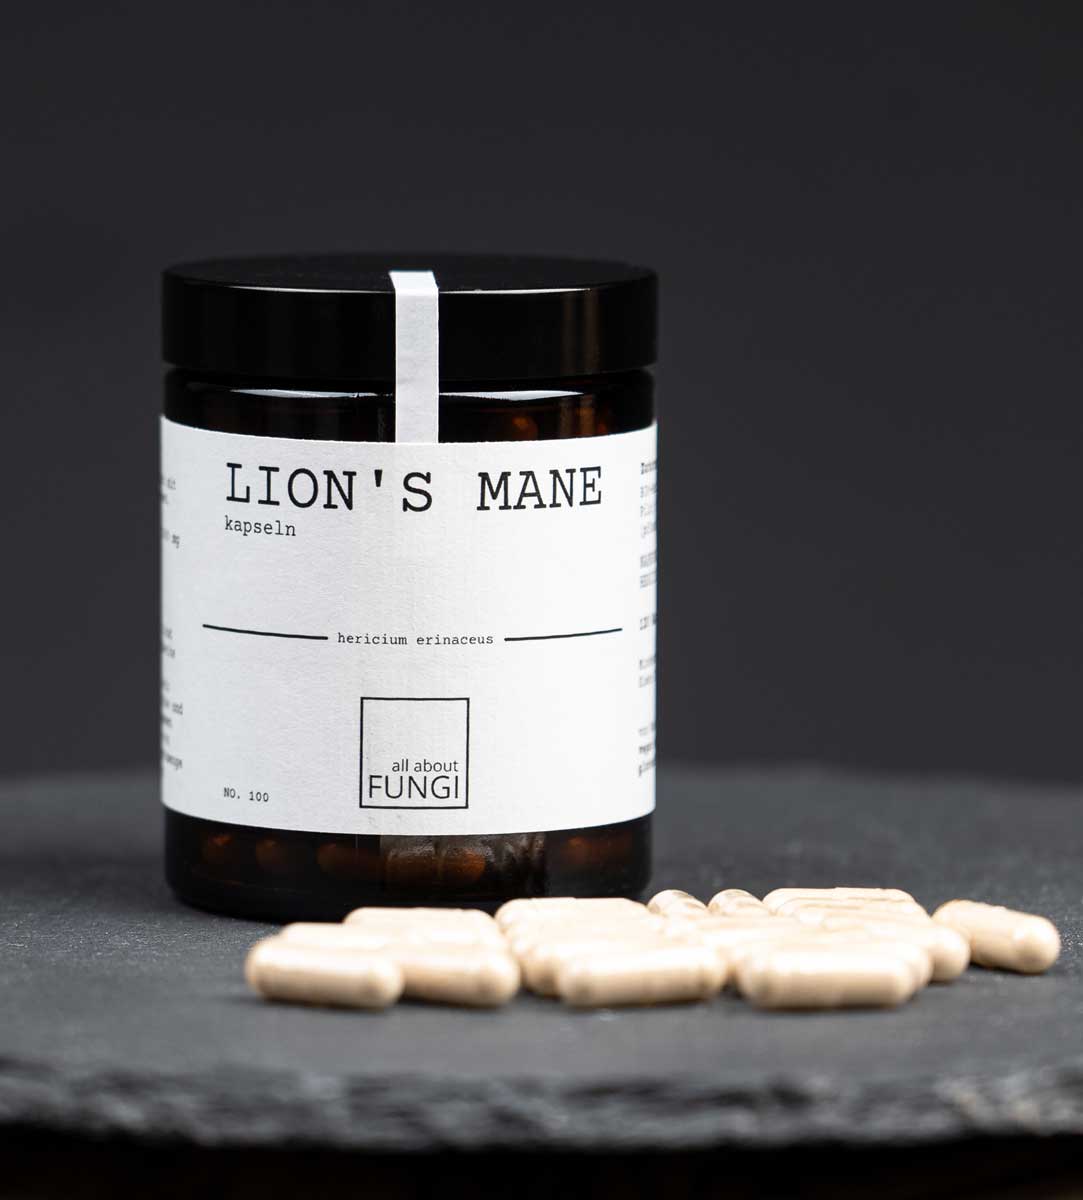 LION'S MANE Kapseln (Igelstachelbart) | Natürlichen Vitalpilz kaufen